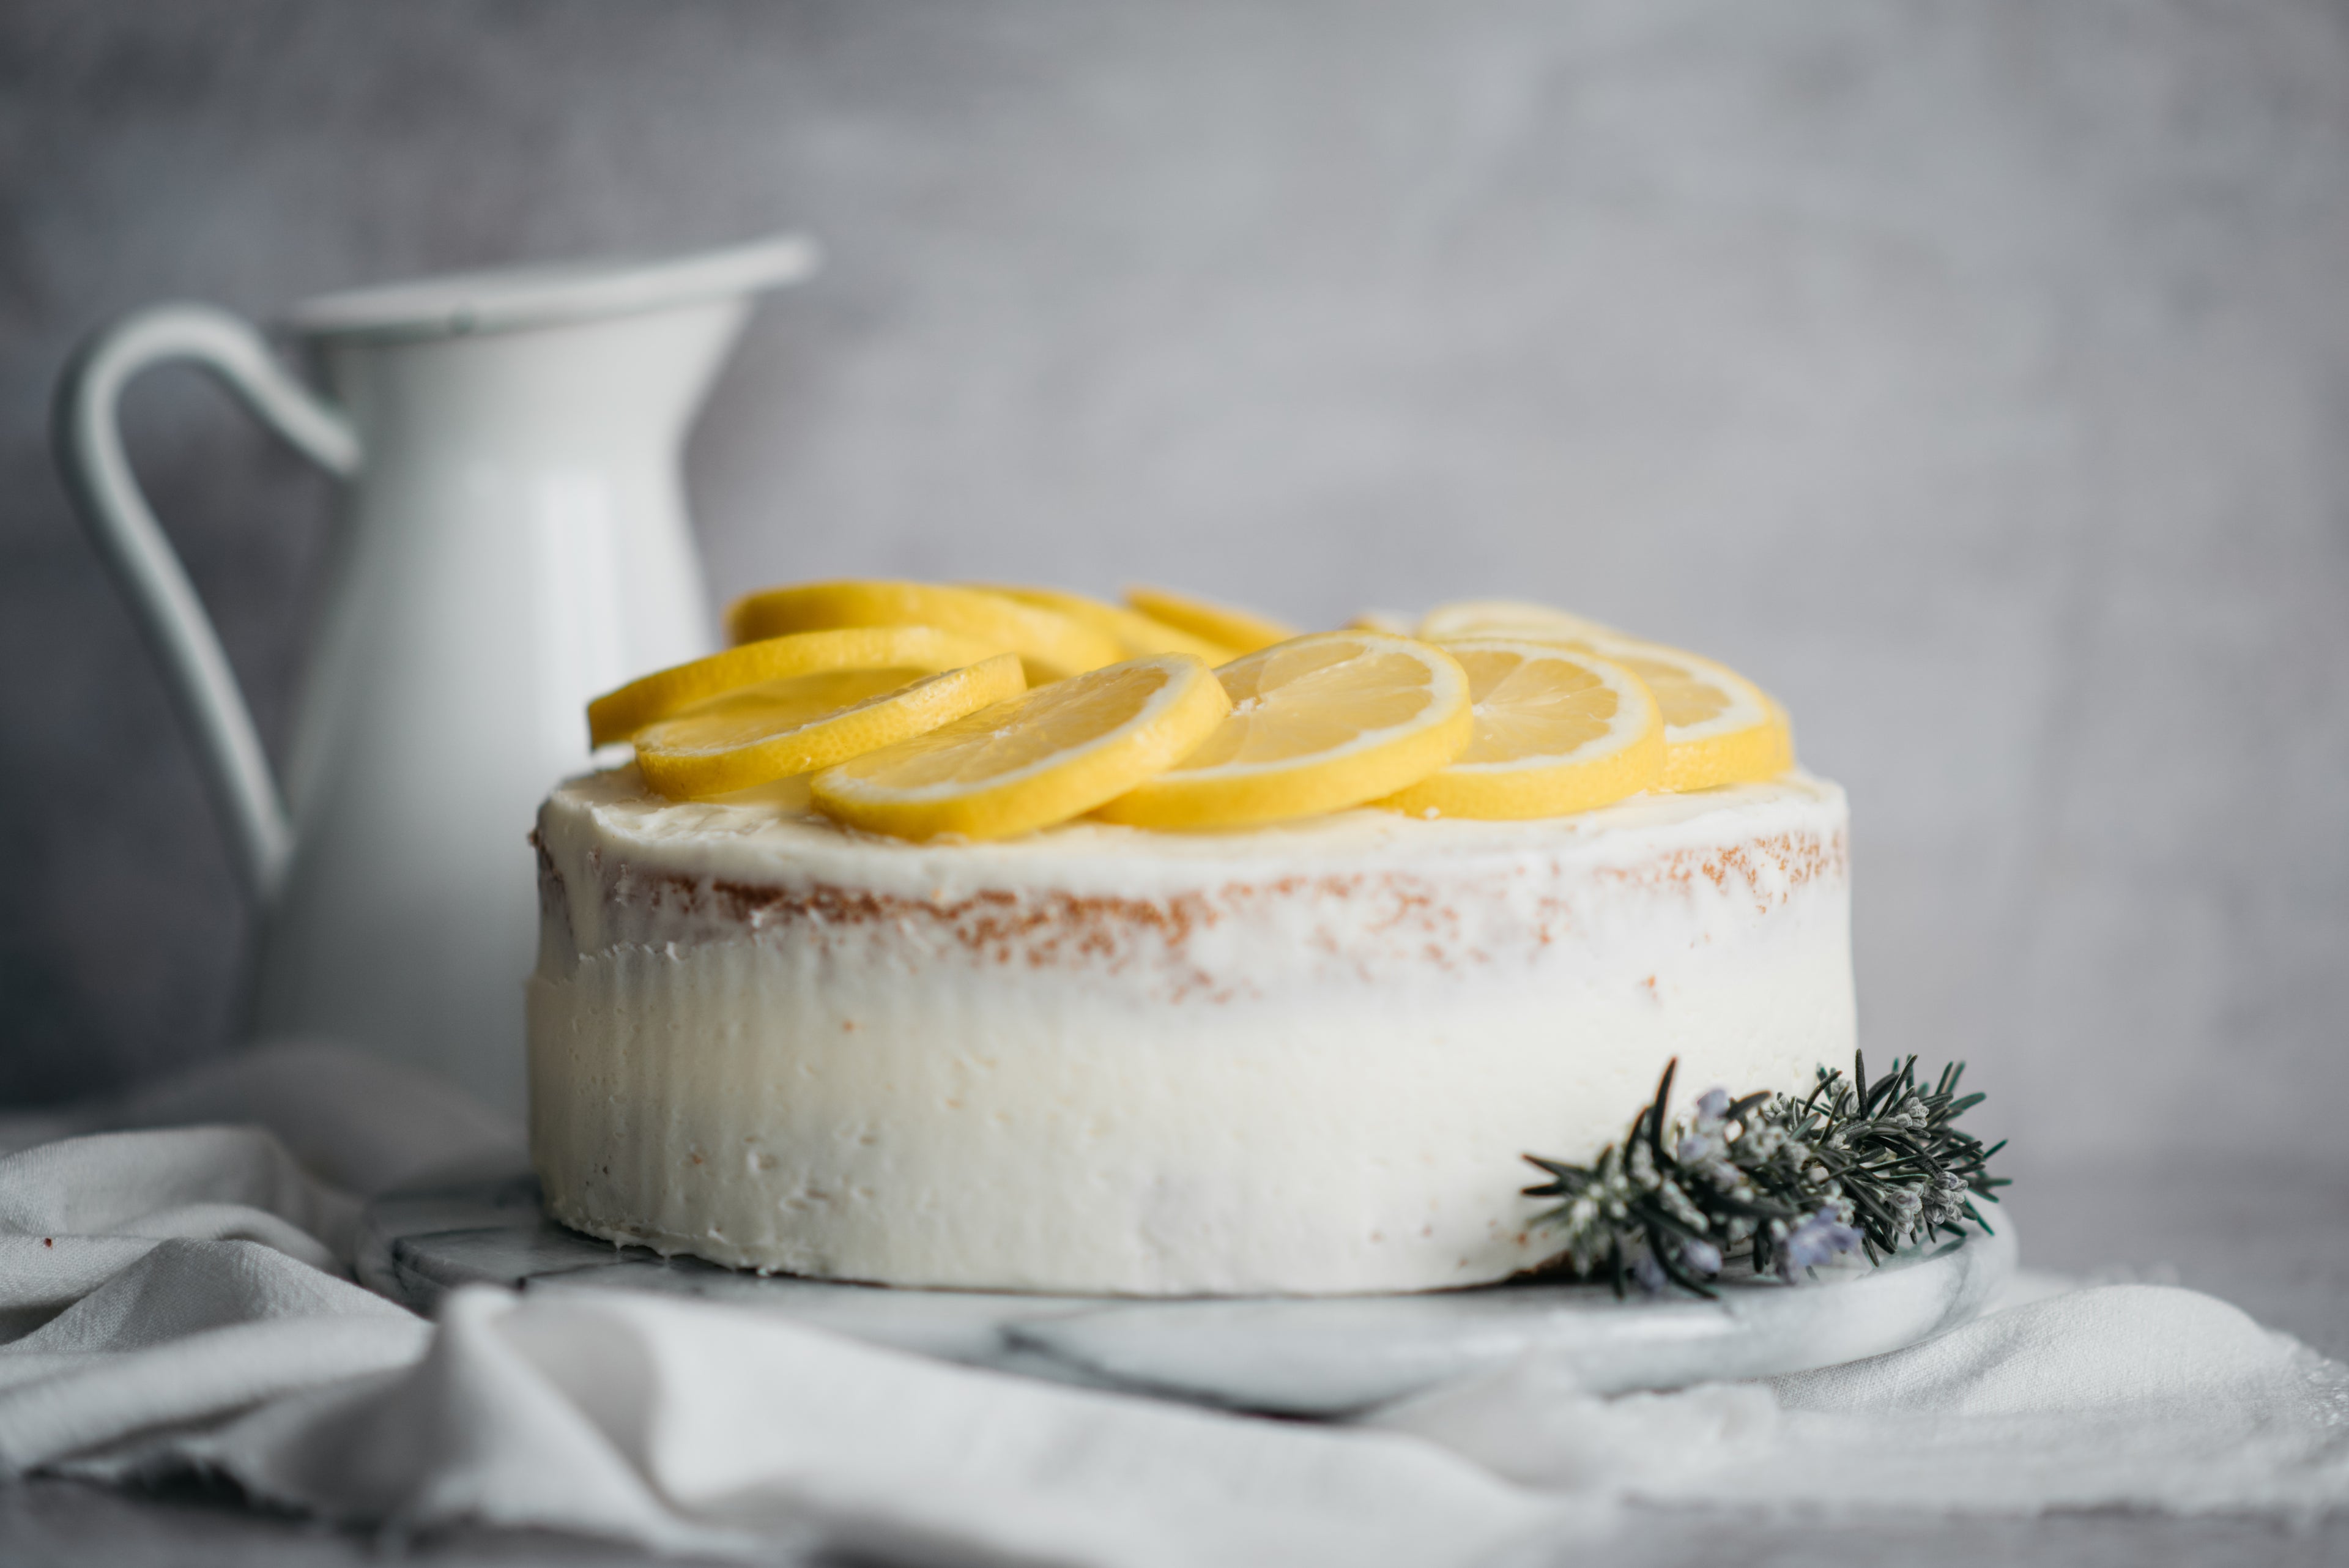 Close up view of Gluten Free Elderflower & Lemon Cake topped with sliced lemon